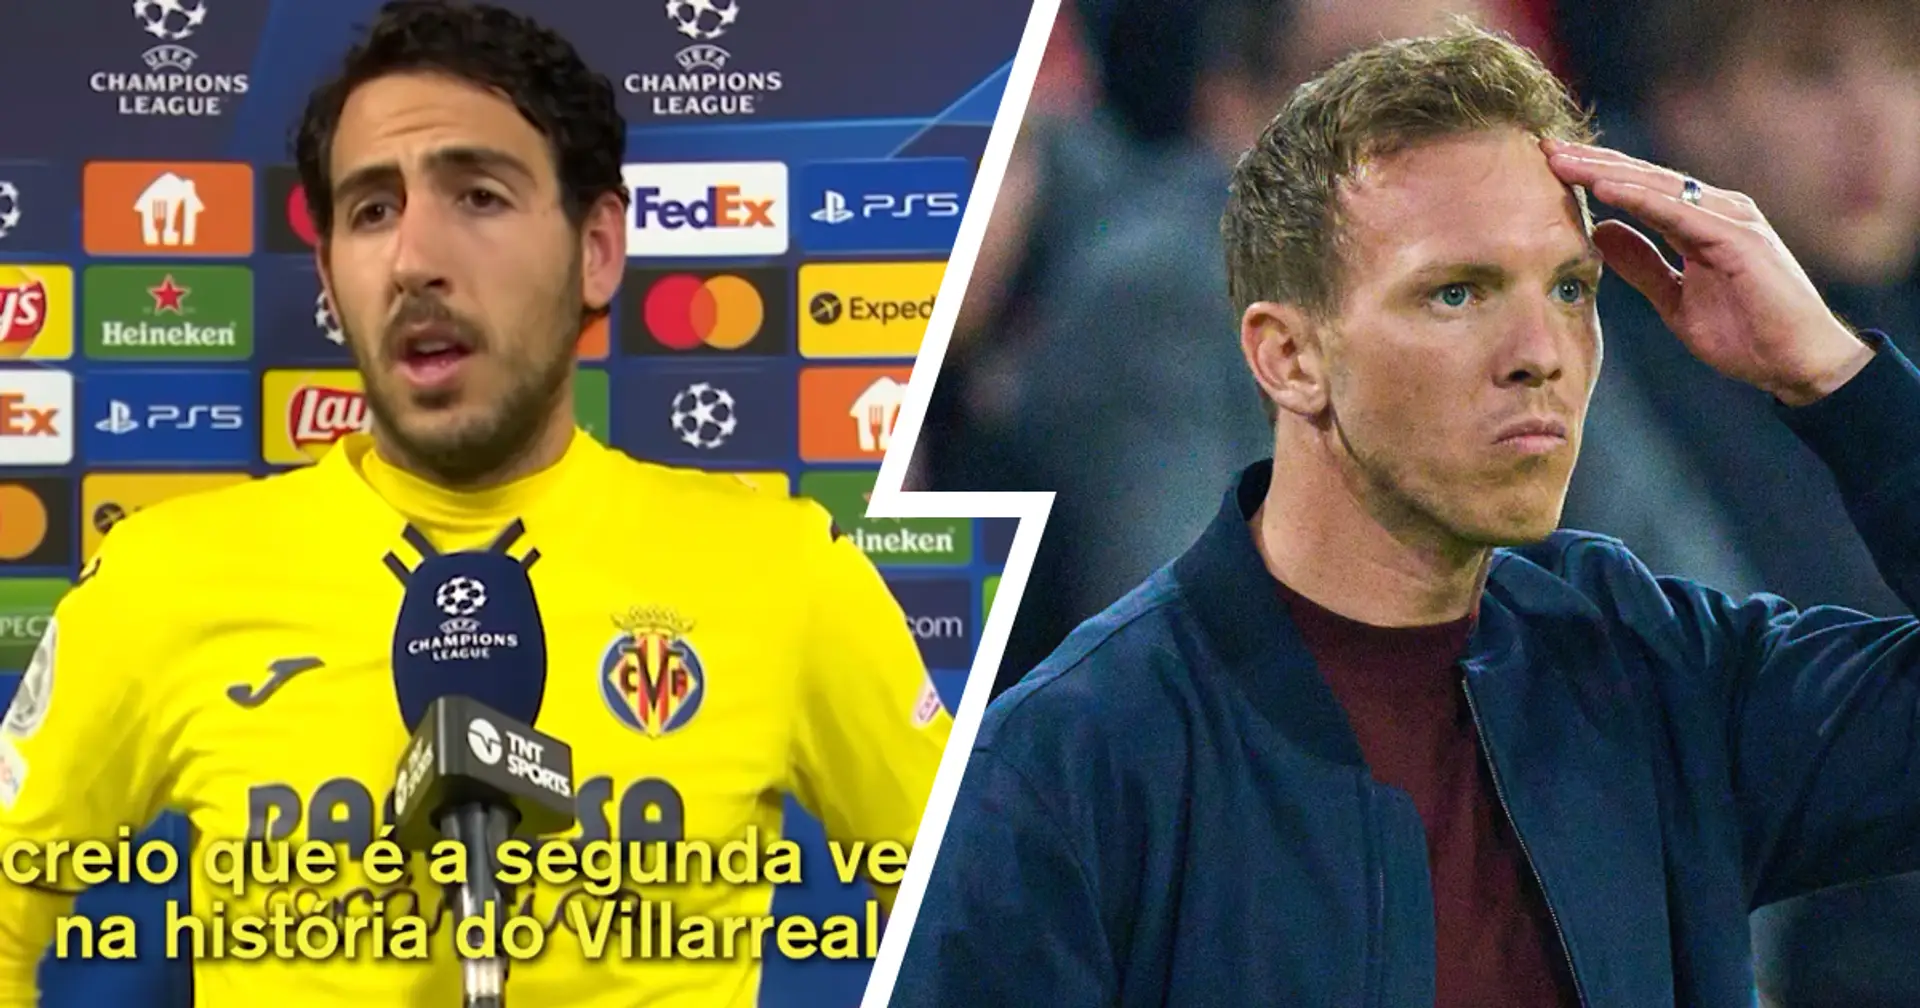 "Wenn du nach oben spuckst, fällt es dir manchmal ins Gesicht": Villarreal-Star Parejo attackiert "respektlosen" Nagelsmann